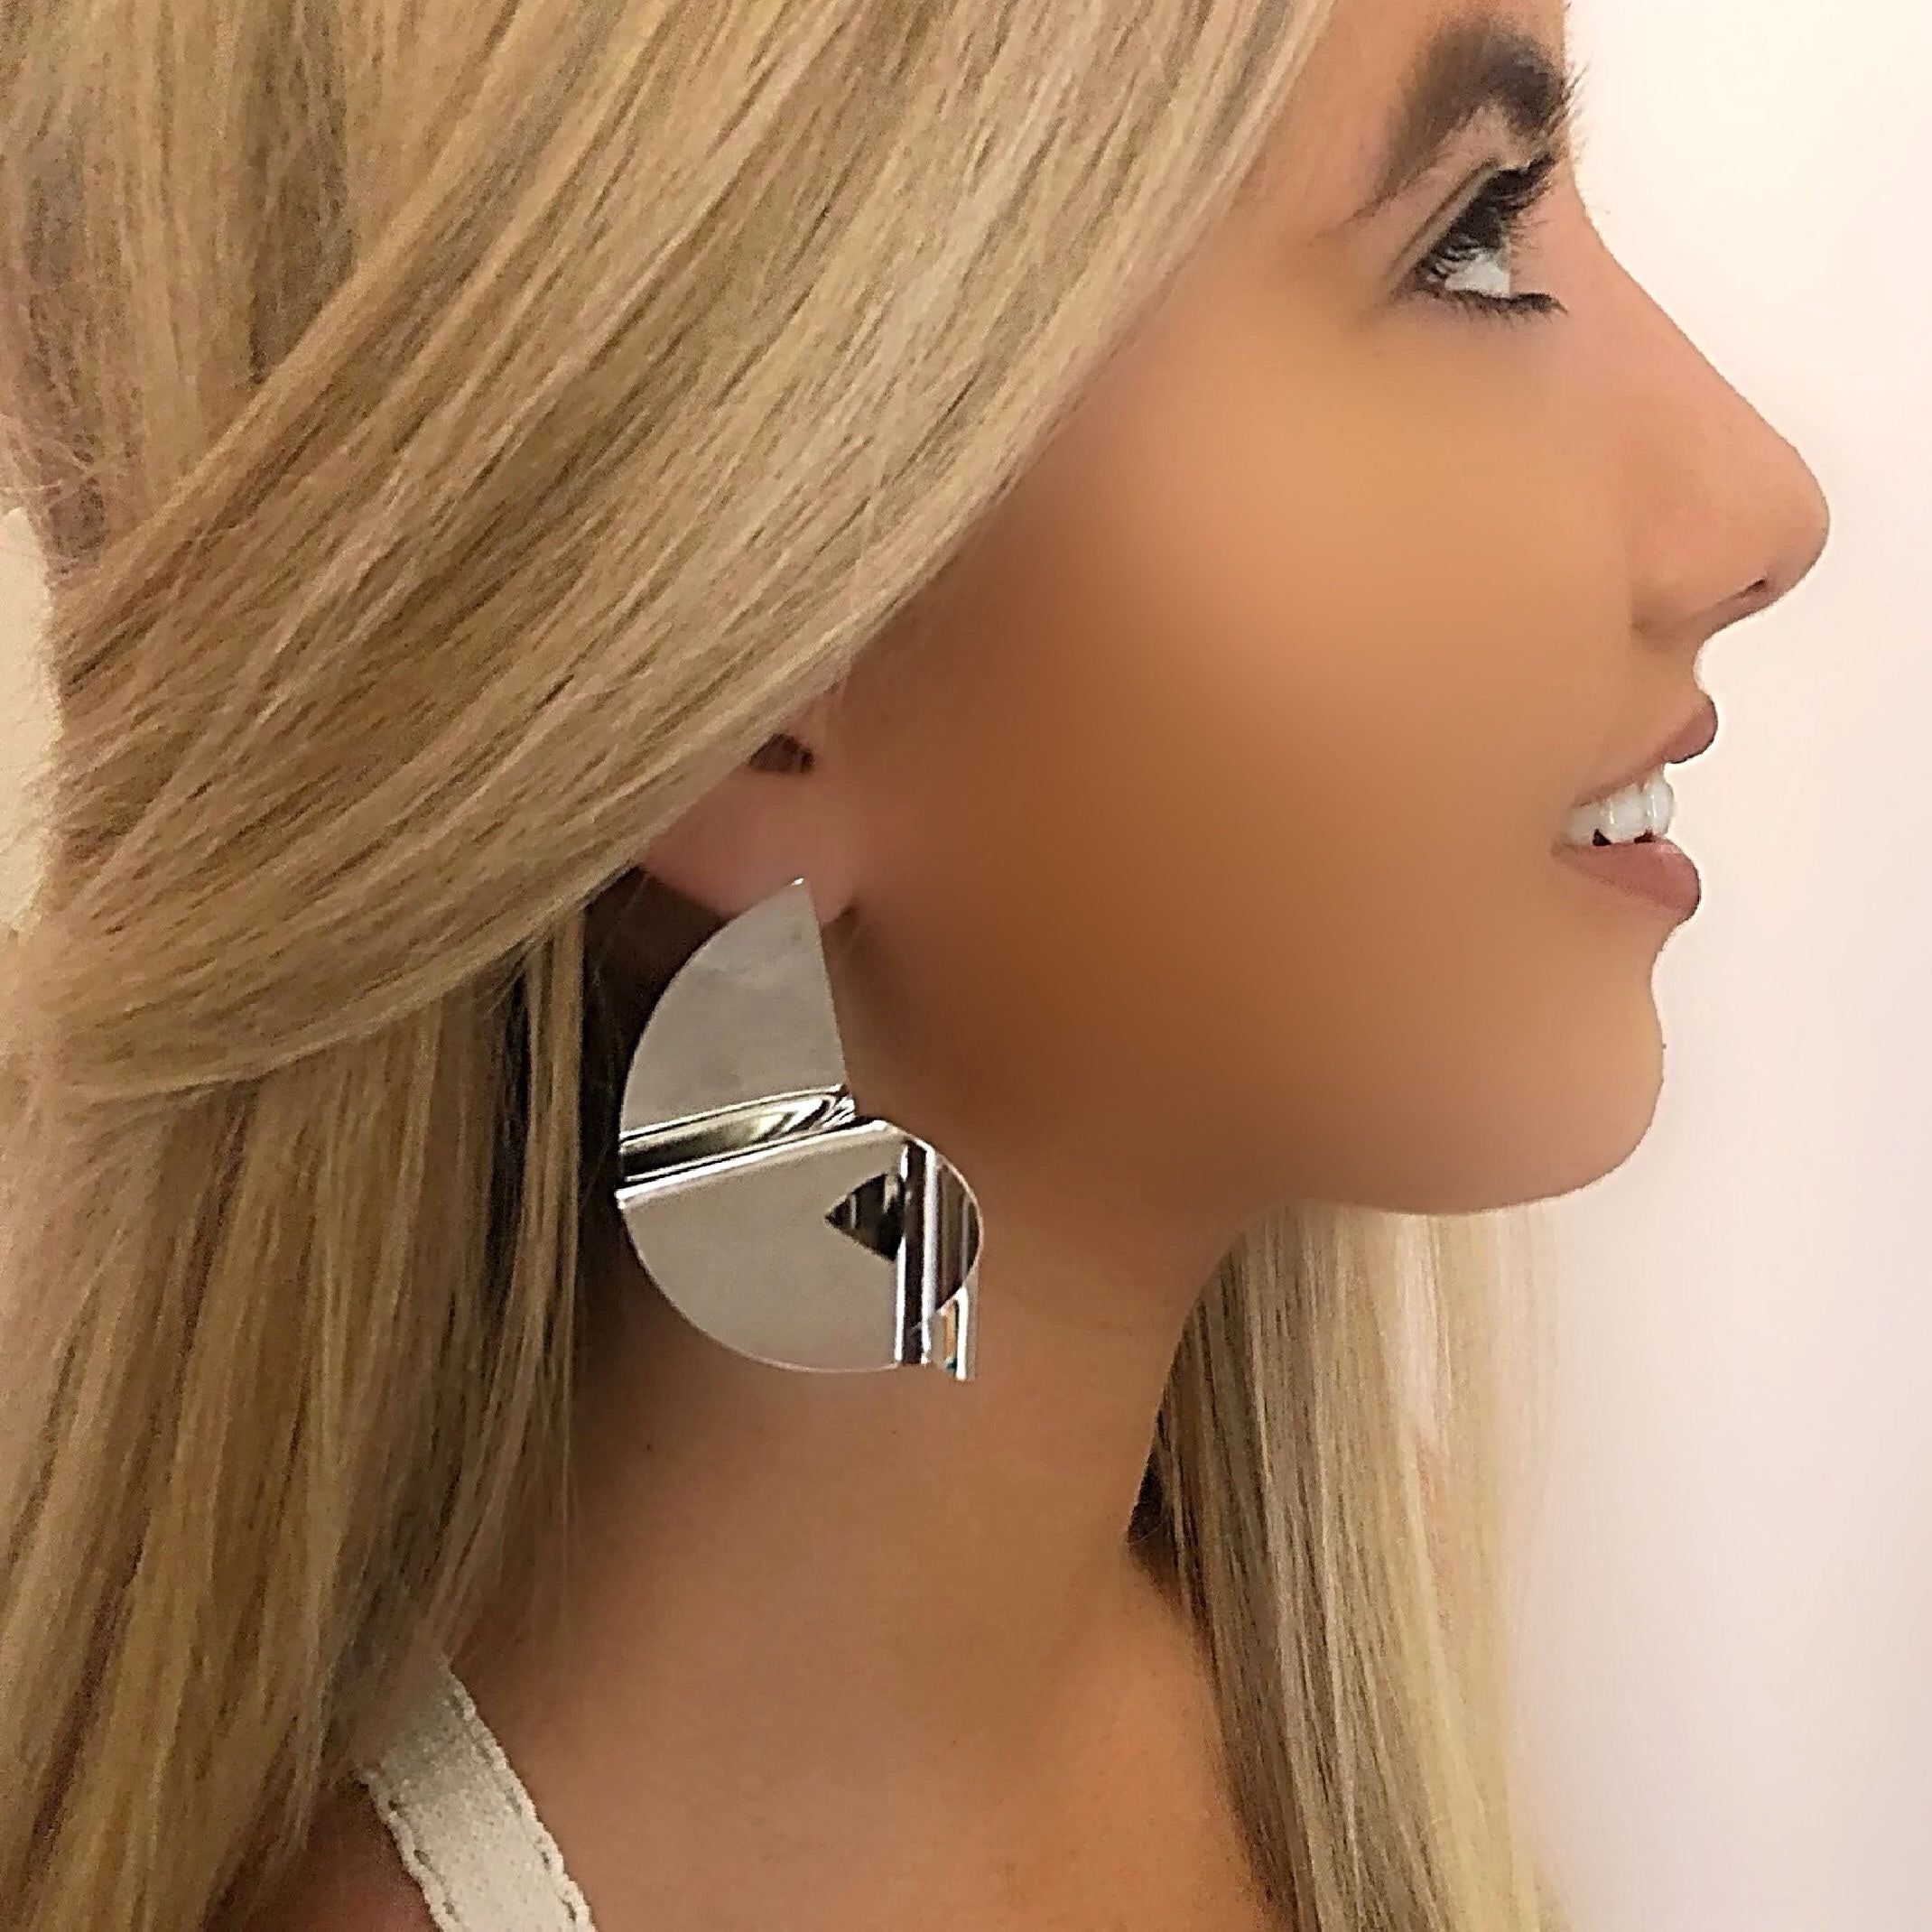 Silver shape earrings 